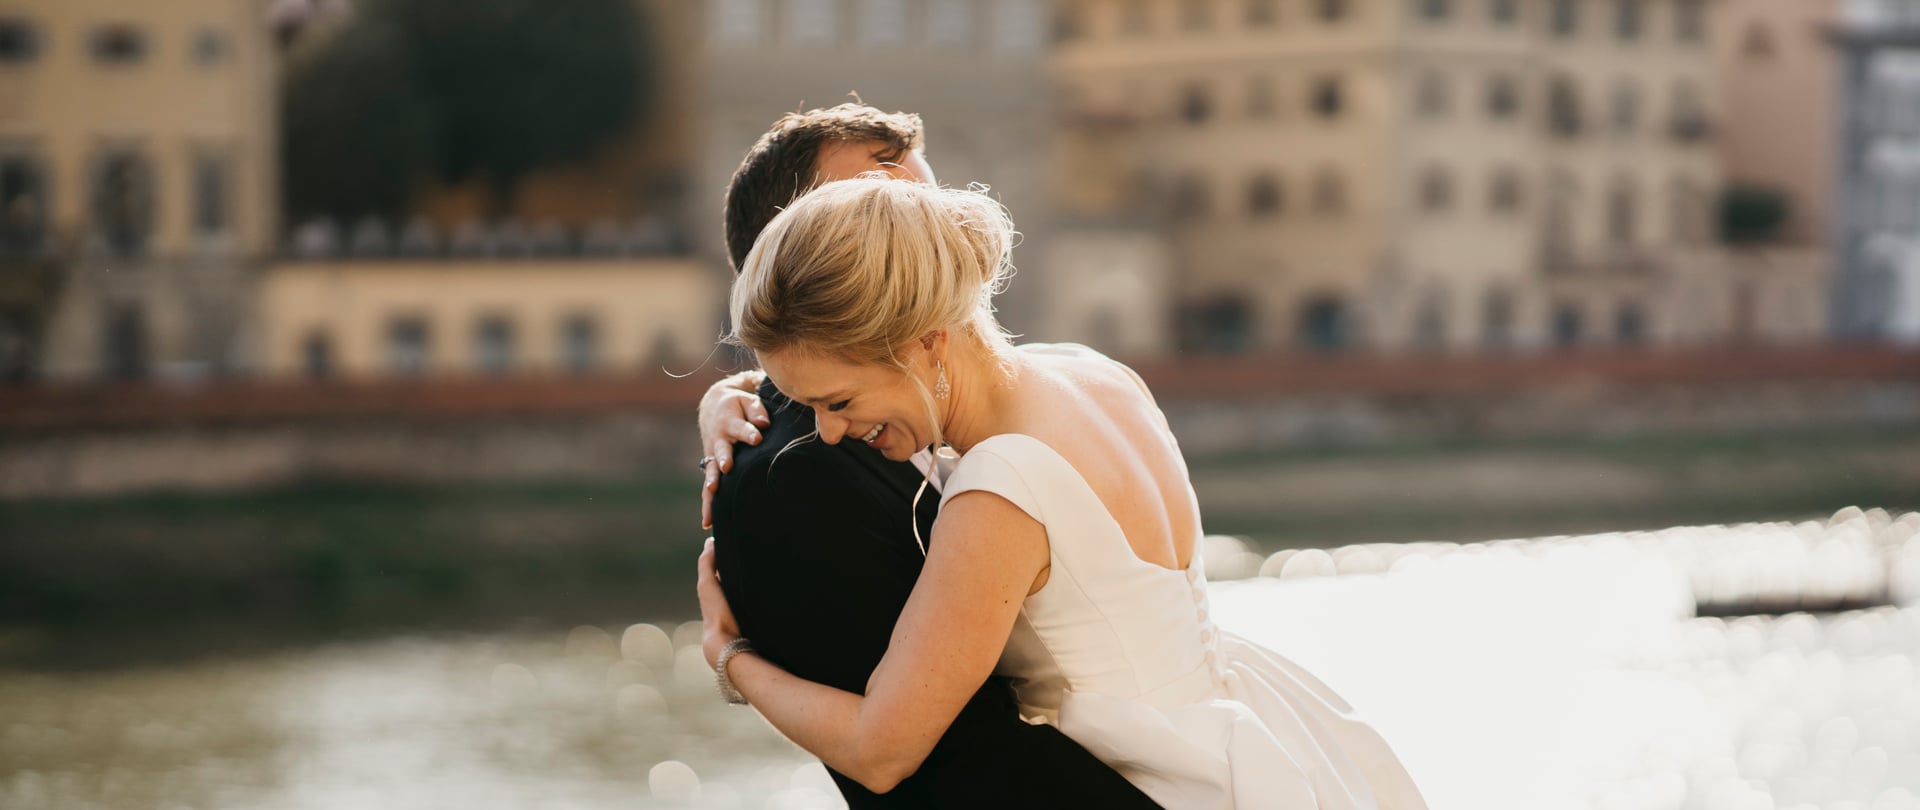 Liz & Owen Wedding Video Filmed at Tuscany, Italy